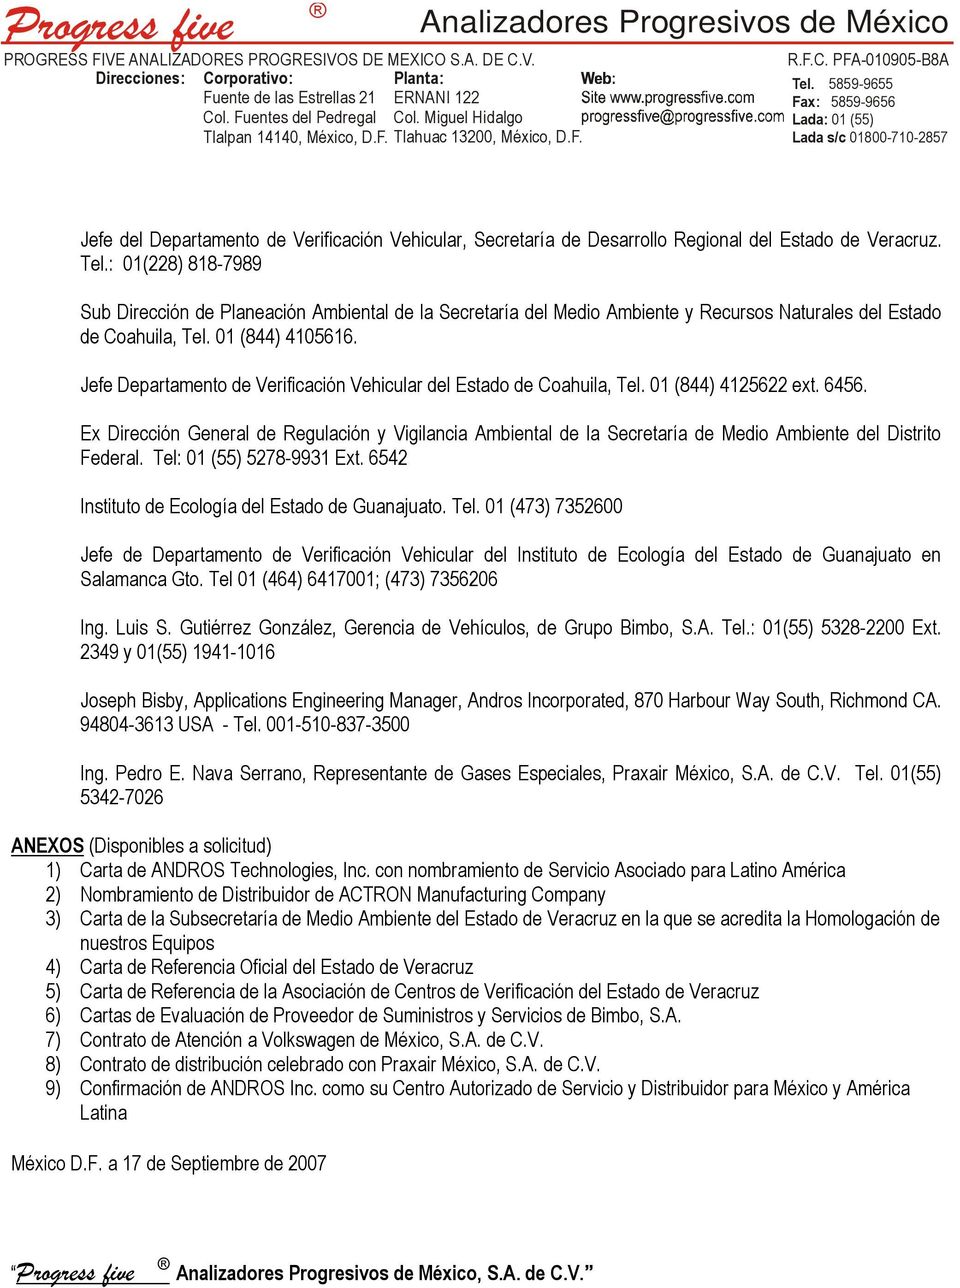 Jefe Departamento de Verificación Vehicular del Estado de Coahuila, Tel. 01 (844) 4125622 ext. 6456.